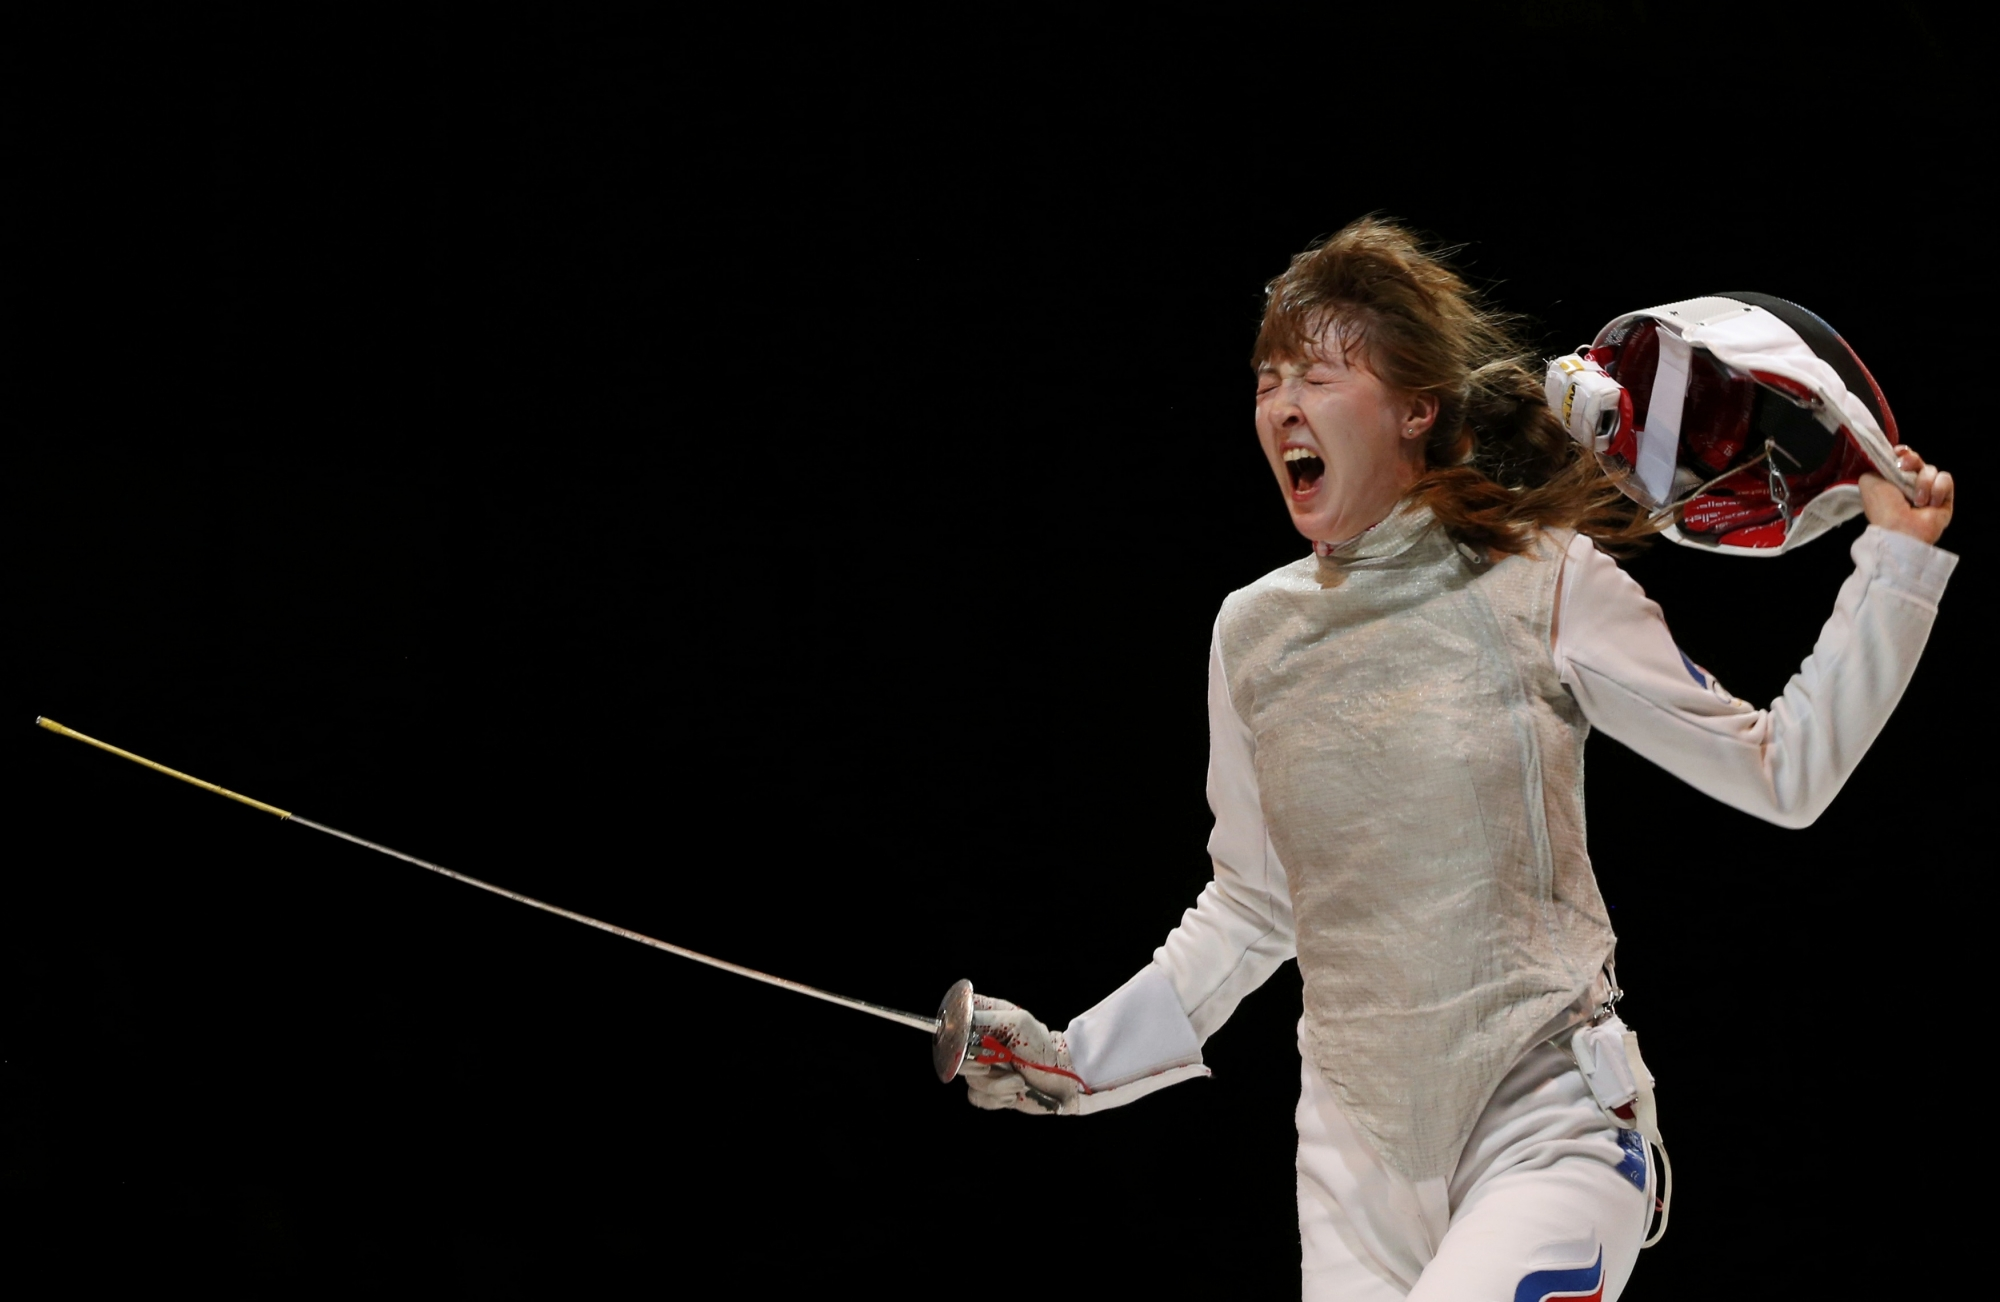 Рапиристка Коробейникова: во время Олимпиады была нервная атмосфера, волнение, но все нормально